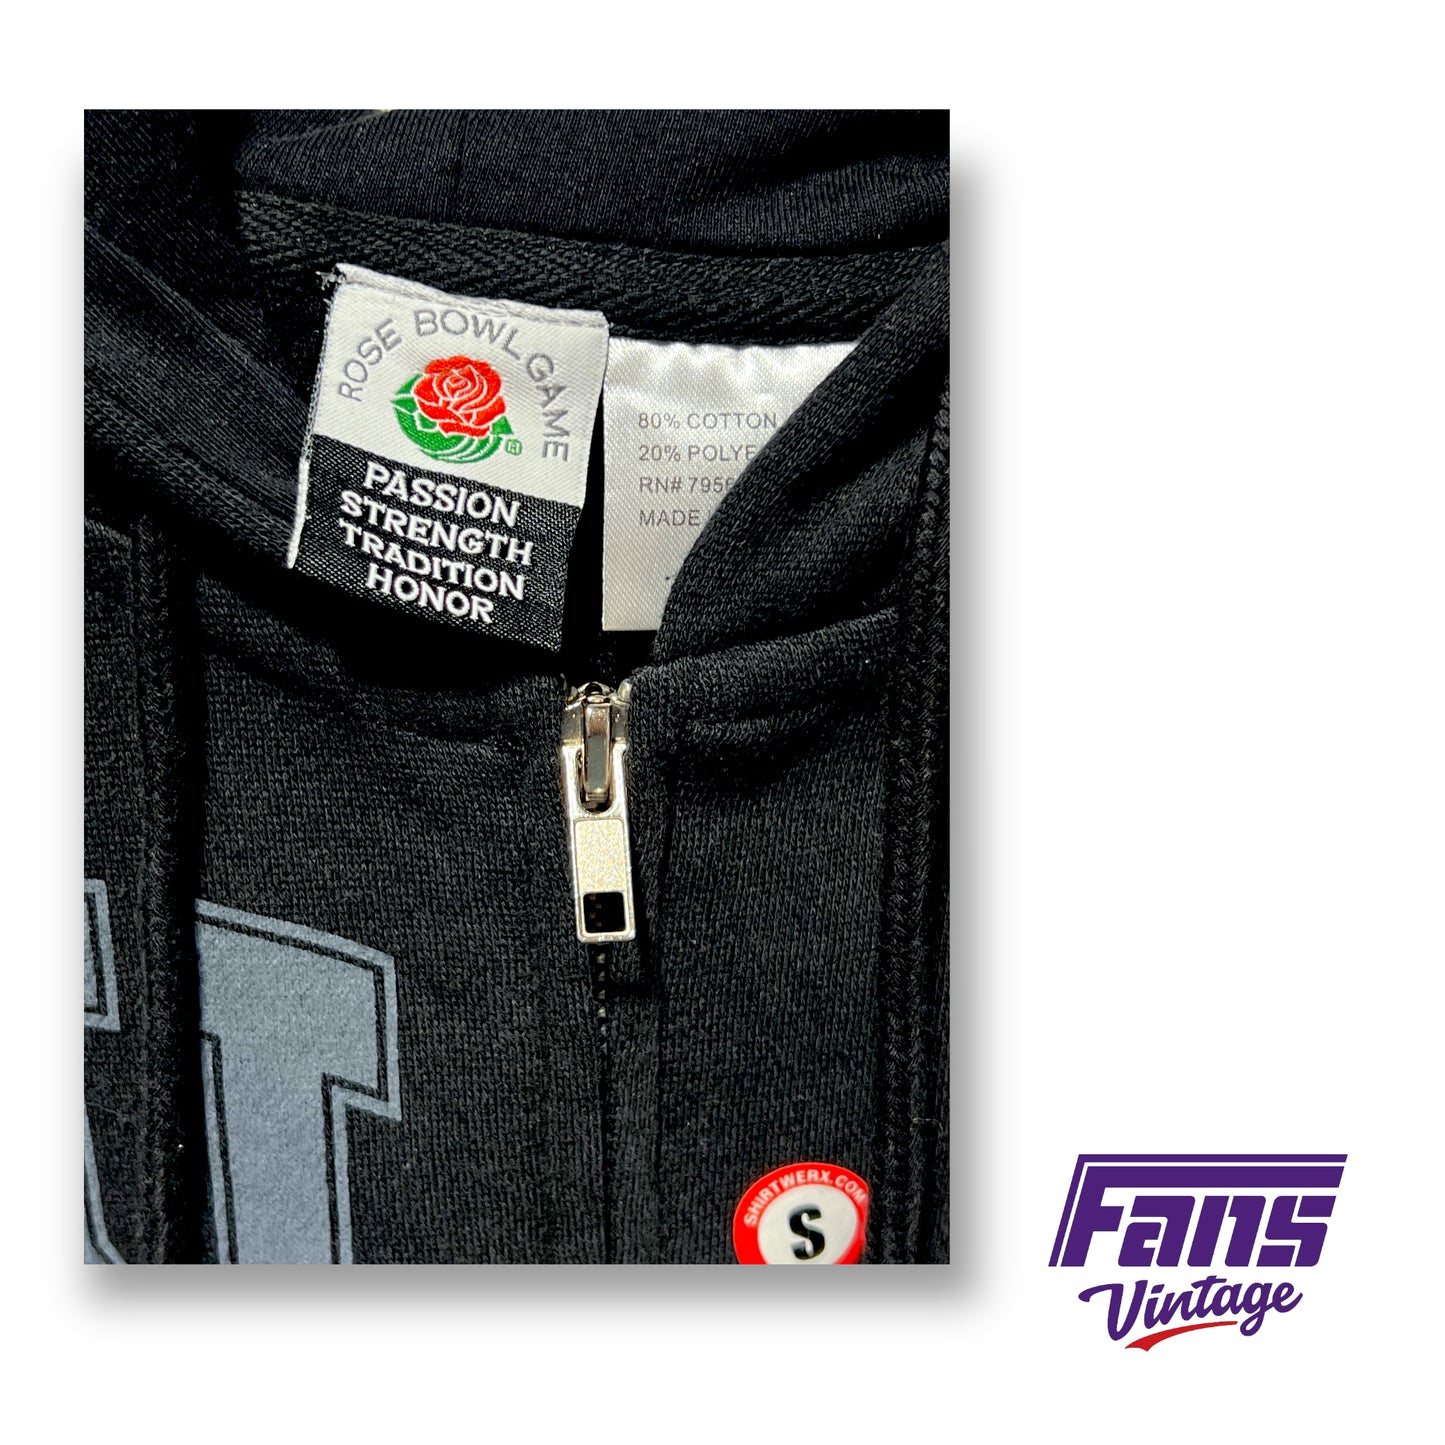 RARE! Vintage TCU Rose Bowl Jacket - Full Zip Hoodie